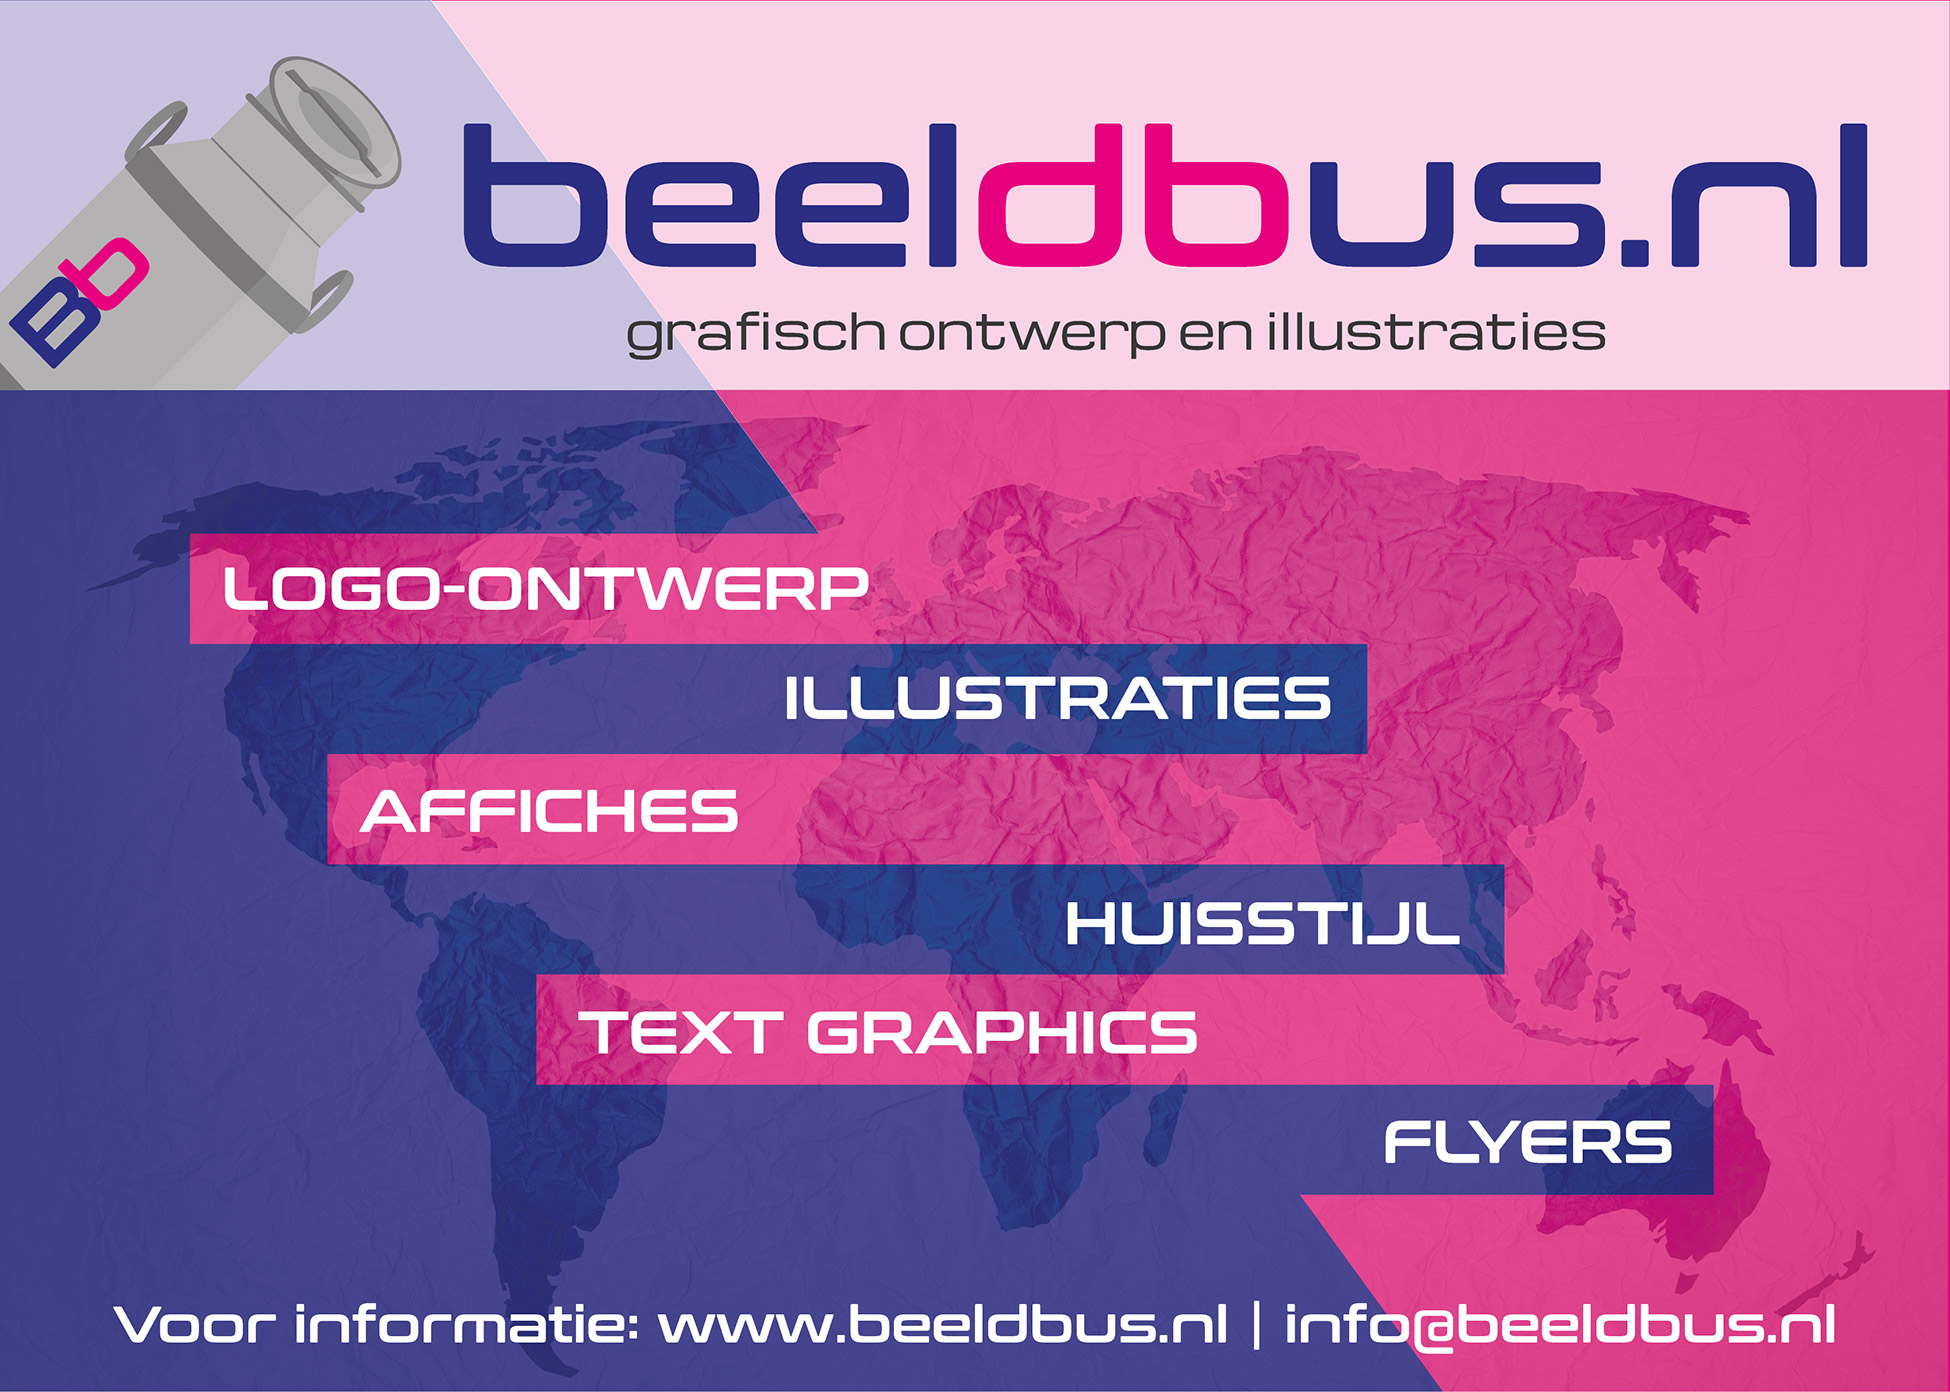 Beeldbus.nl | Grafisch ontwerp en illustraties